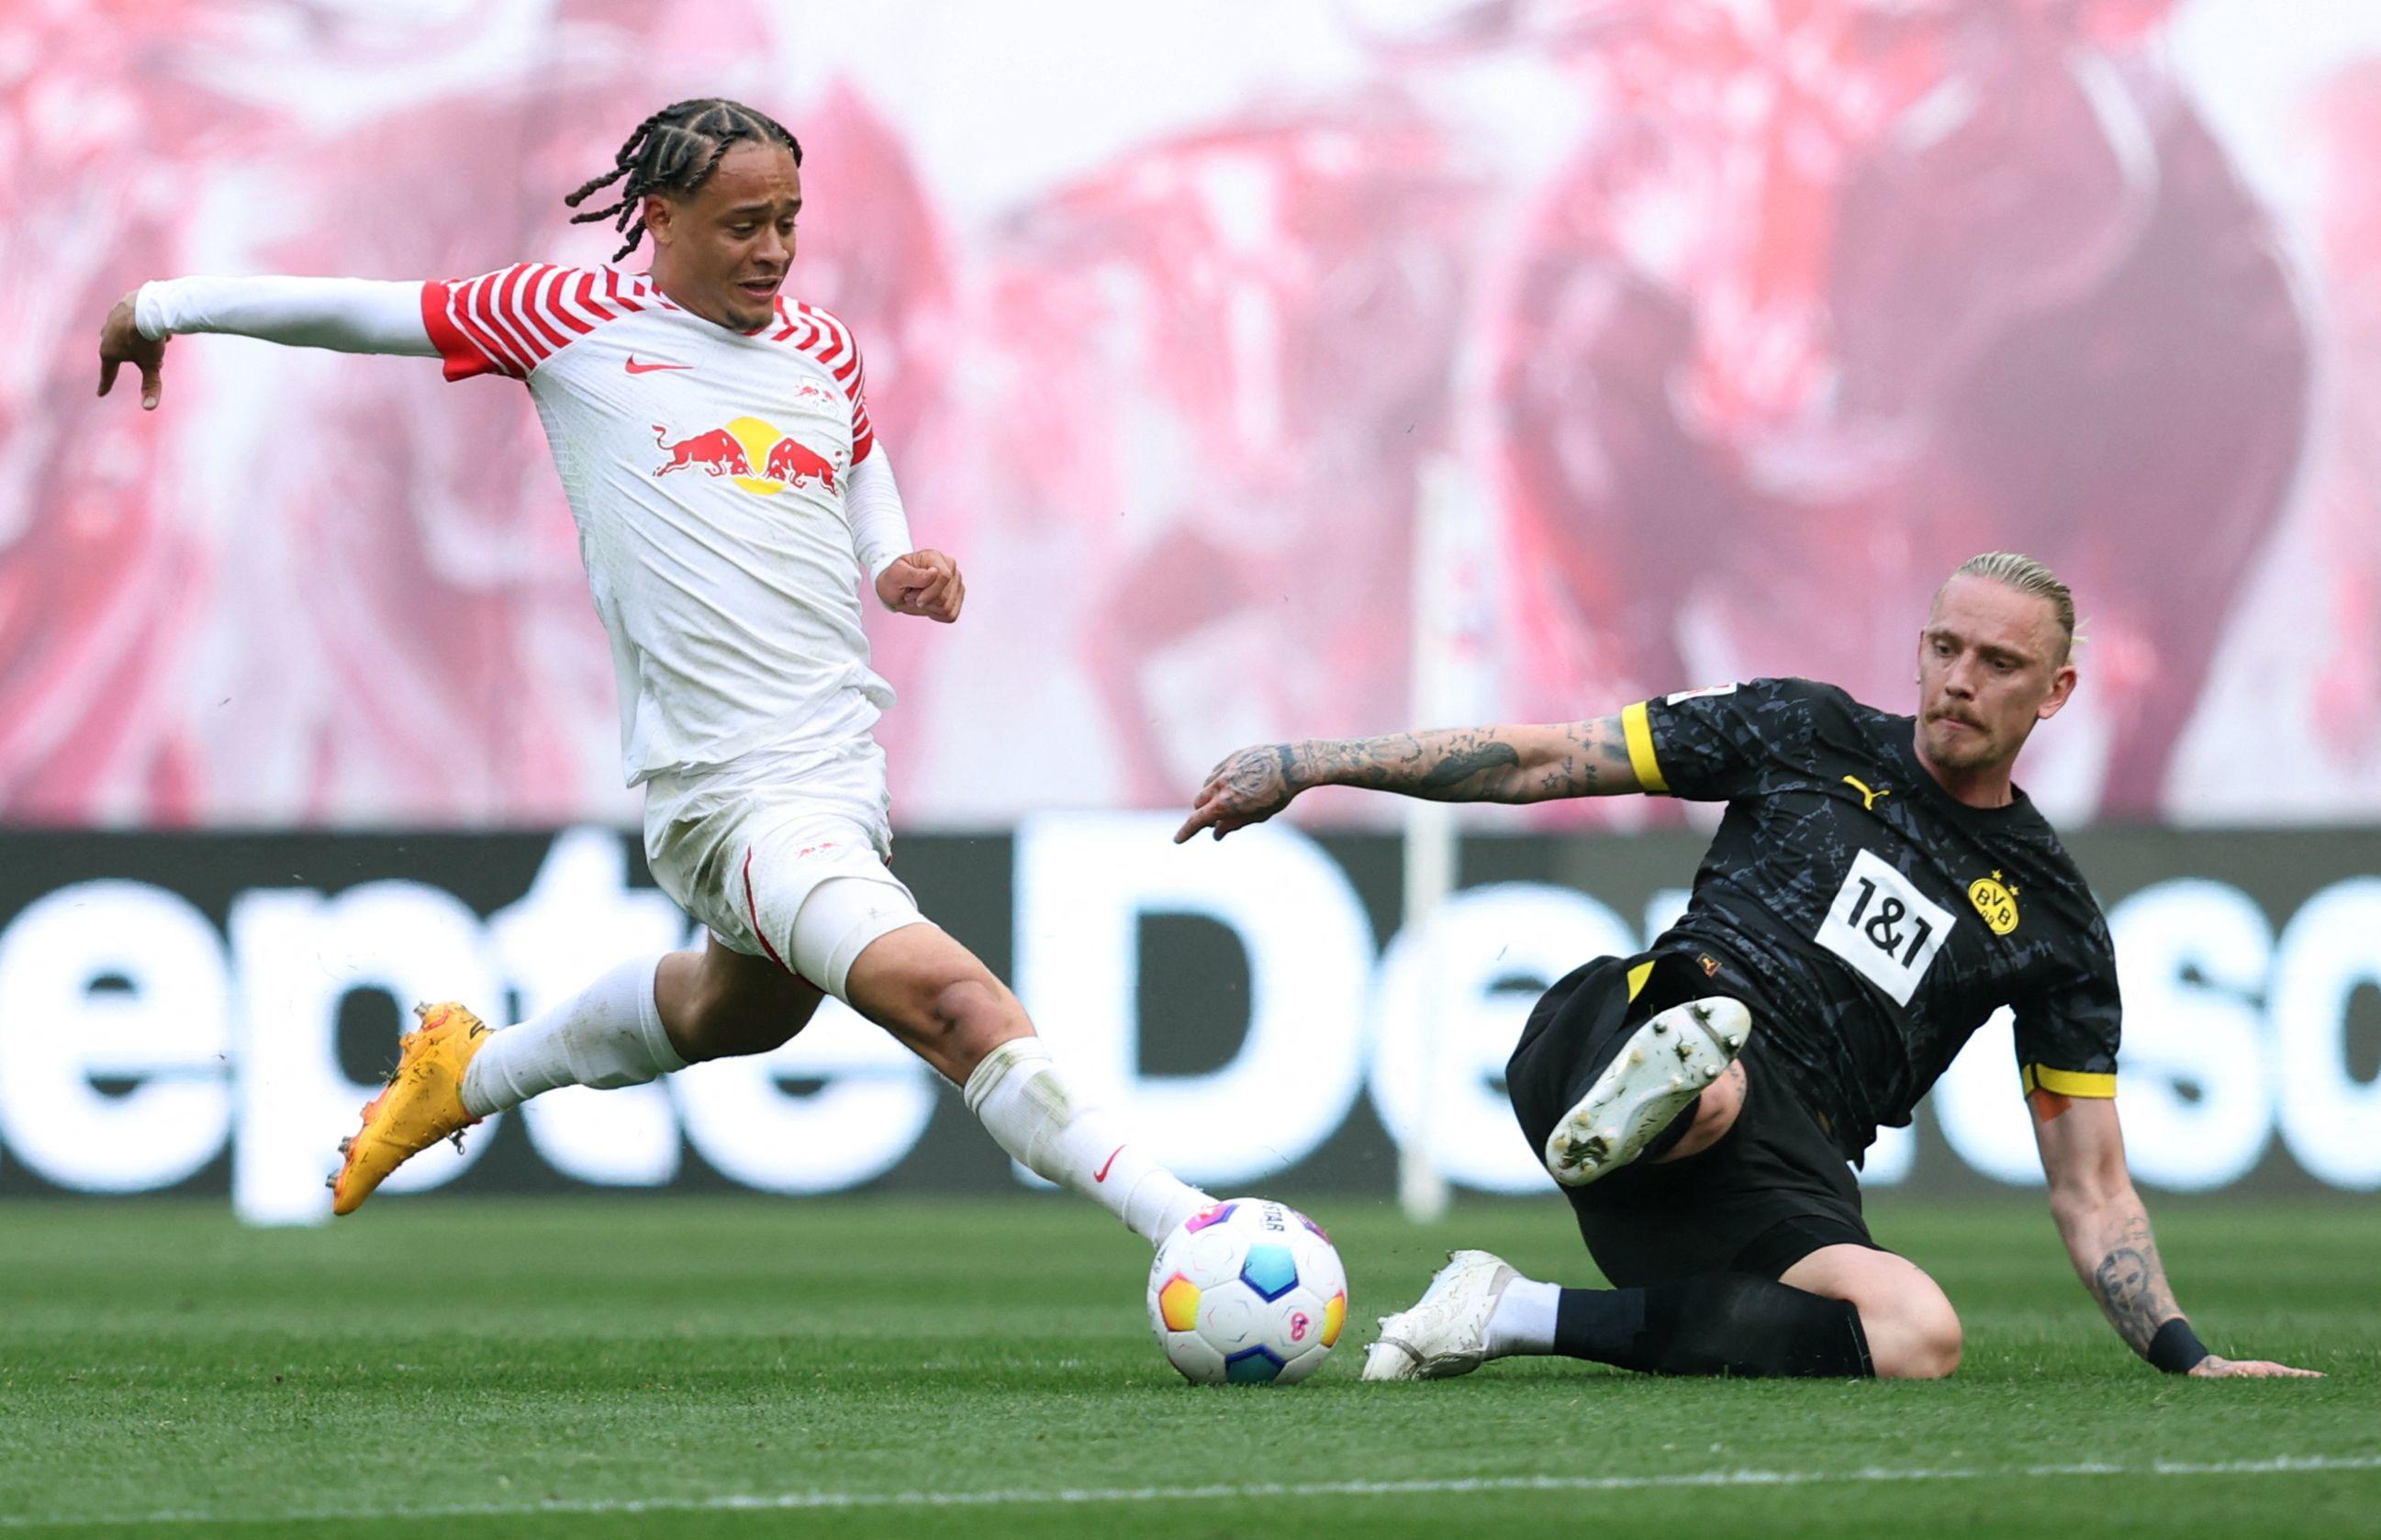 Le RB Leipzig, emmené par un excellent Xavi Simons, a surclassé Dortmund calamiteux ce samedi après-midi en Bundesliga. AFP/Ronny Hartmann